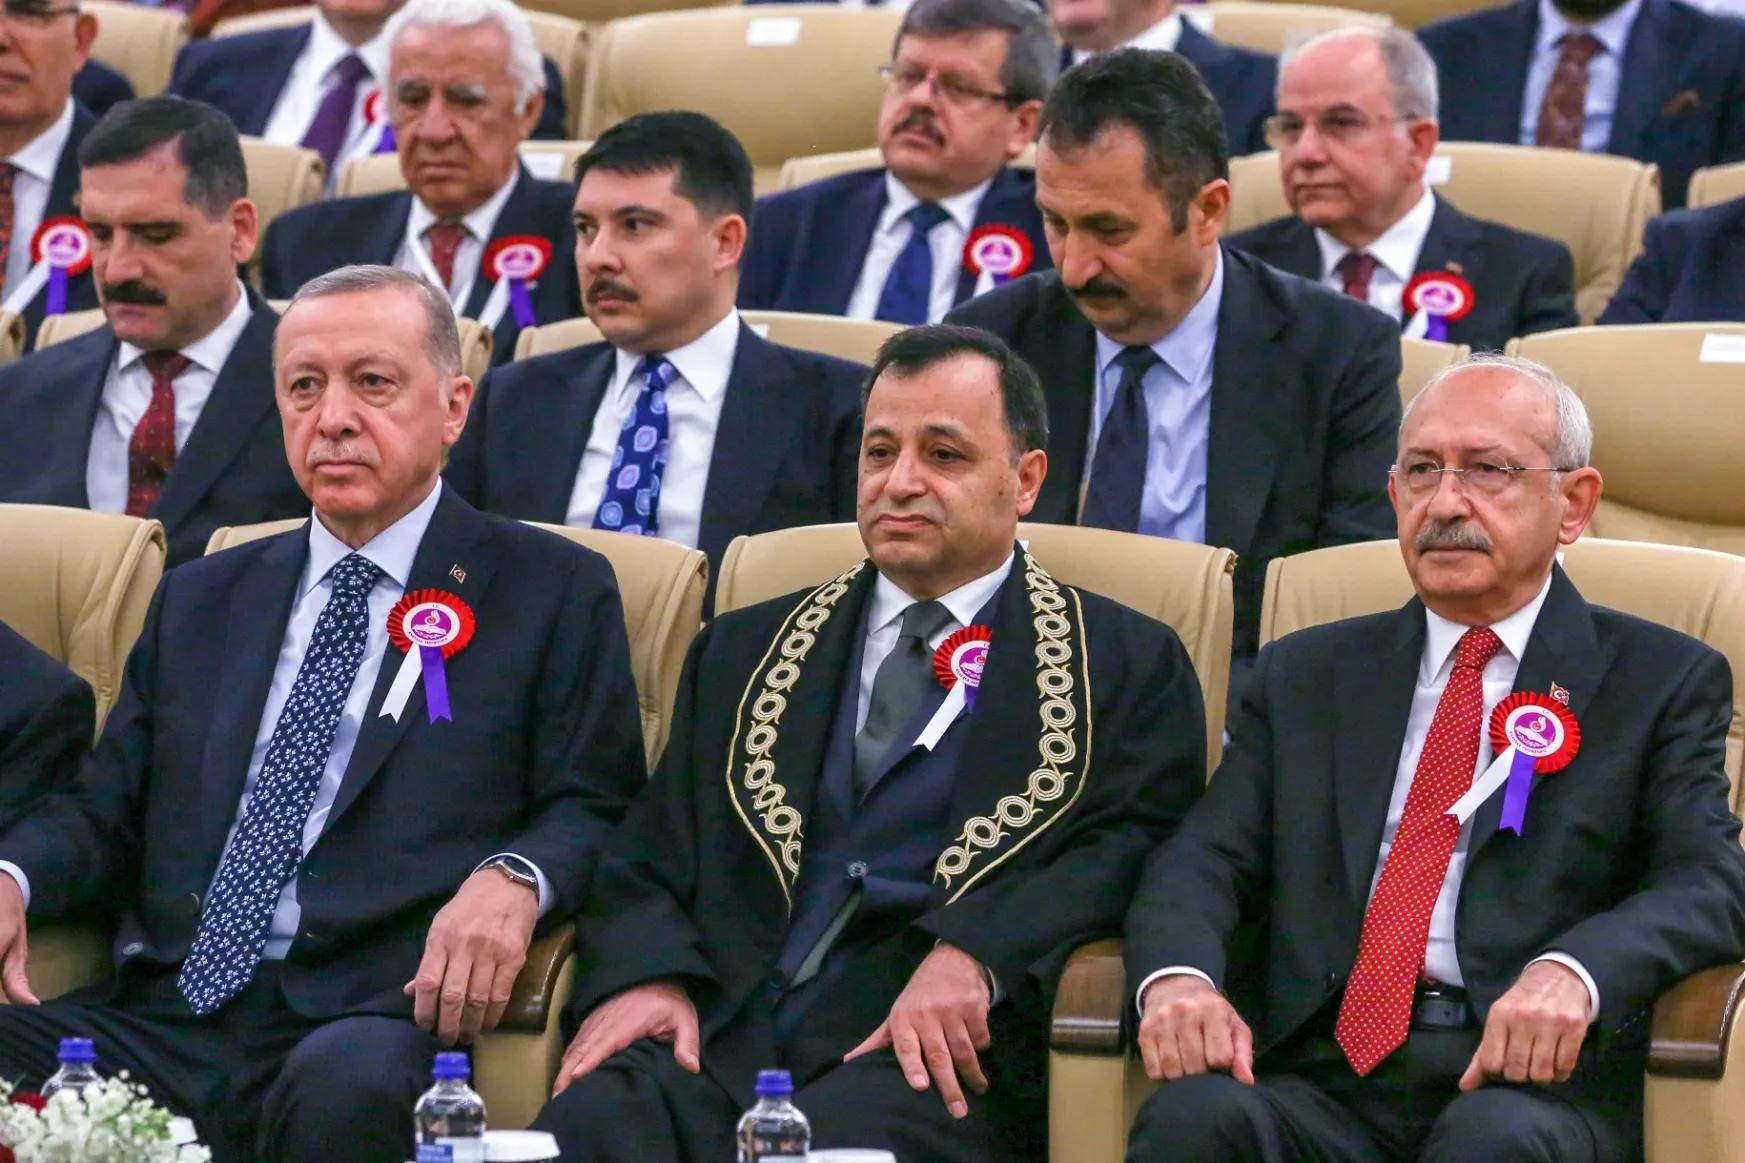 Erdoğan behozta lemaradását, a kampányhajrára lett nagyon szoros a török elnökválasztás